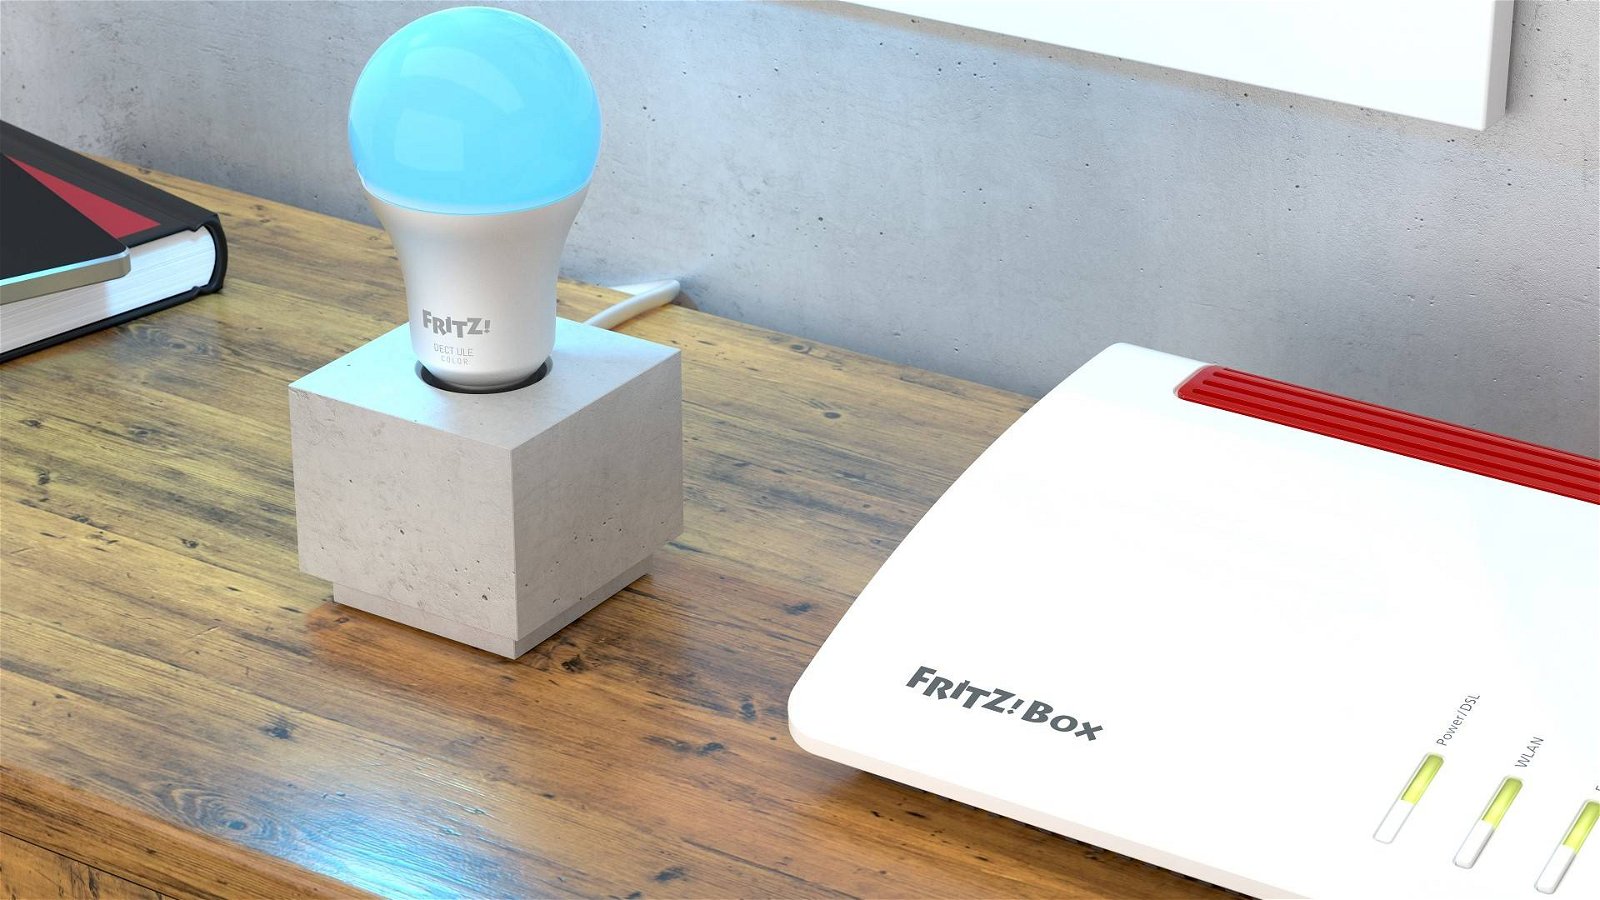 Immagine di FRITZ!: presentati i nuovi modelli per Wi-Fi 6, 5G, Fibra Ottica e Smart Home